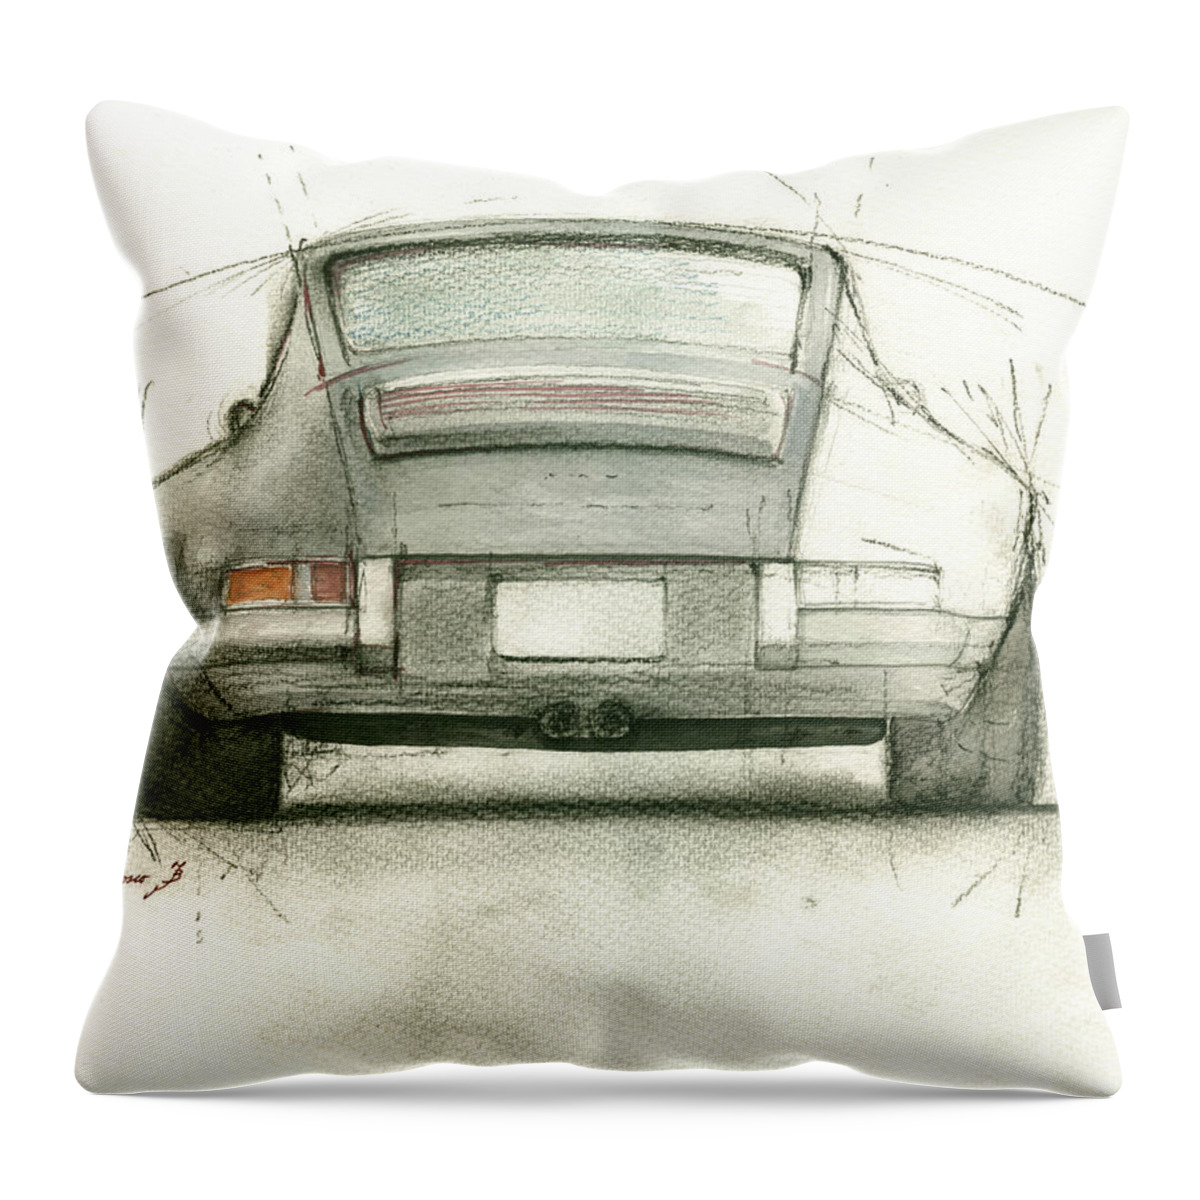 Porsche Art Throw Pillow featuring the painting Porsche 911 rs by Juan Bosco